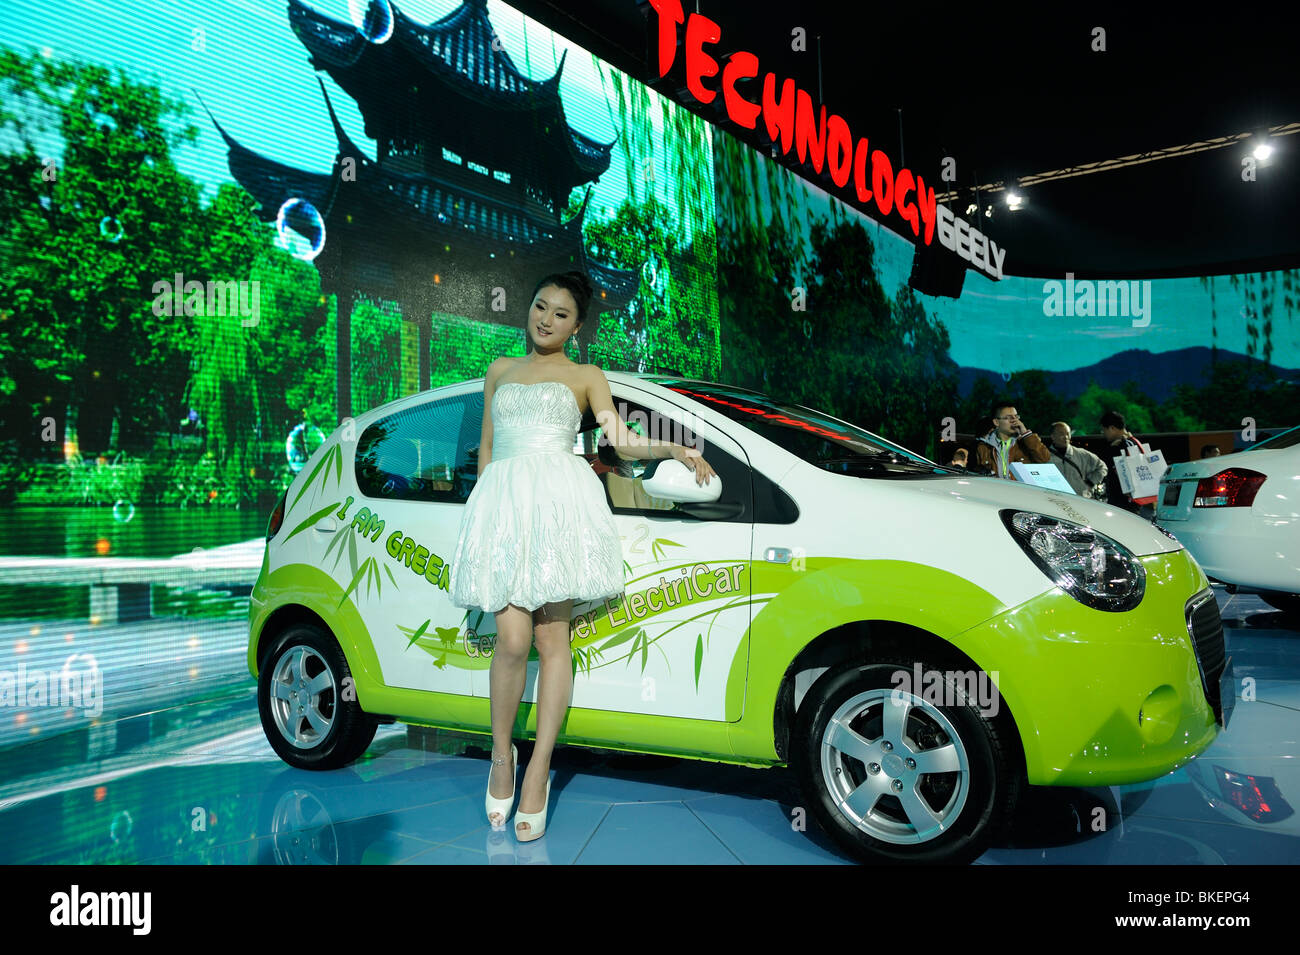 Geely elettronico dell energia di auto a Pechino Auto Show 2010. Foto Stock